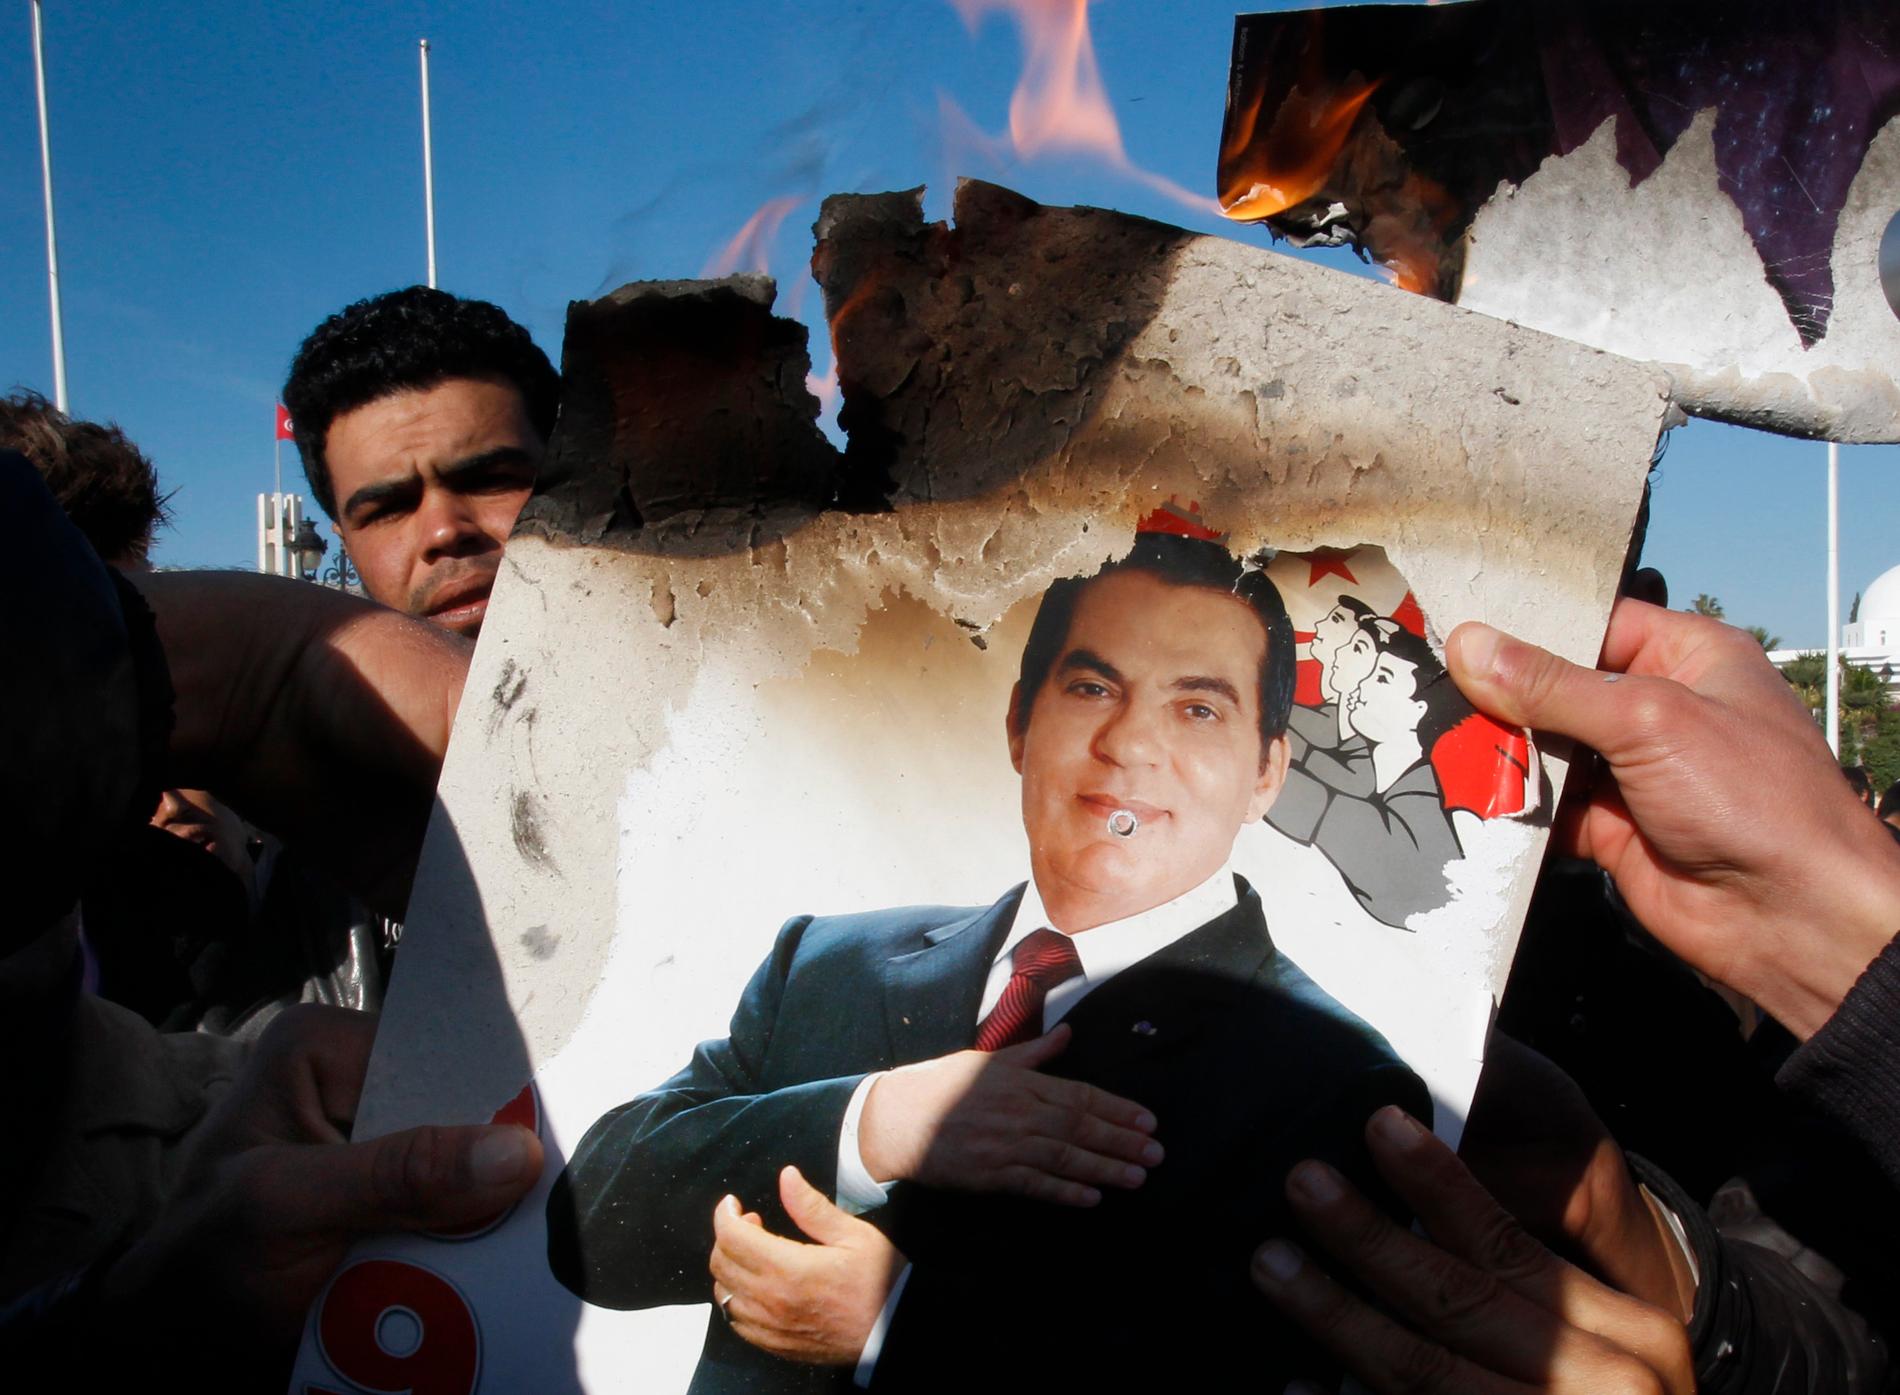 Jasminrevolutionen Demonstranterna bränner en bild av Tunisiens president Ben Ali, januari 2011.